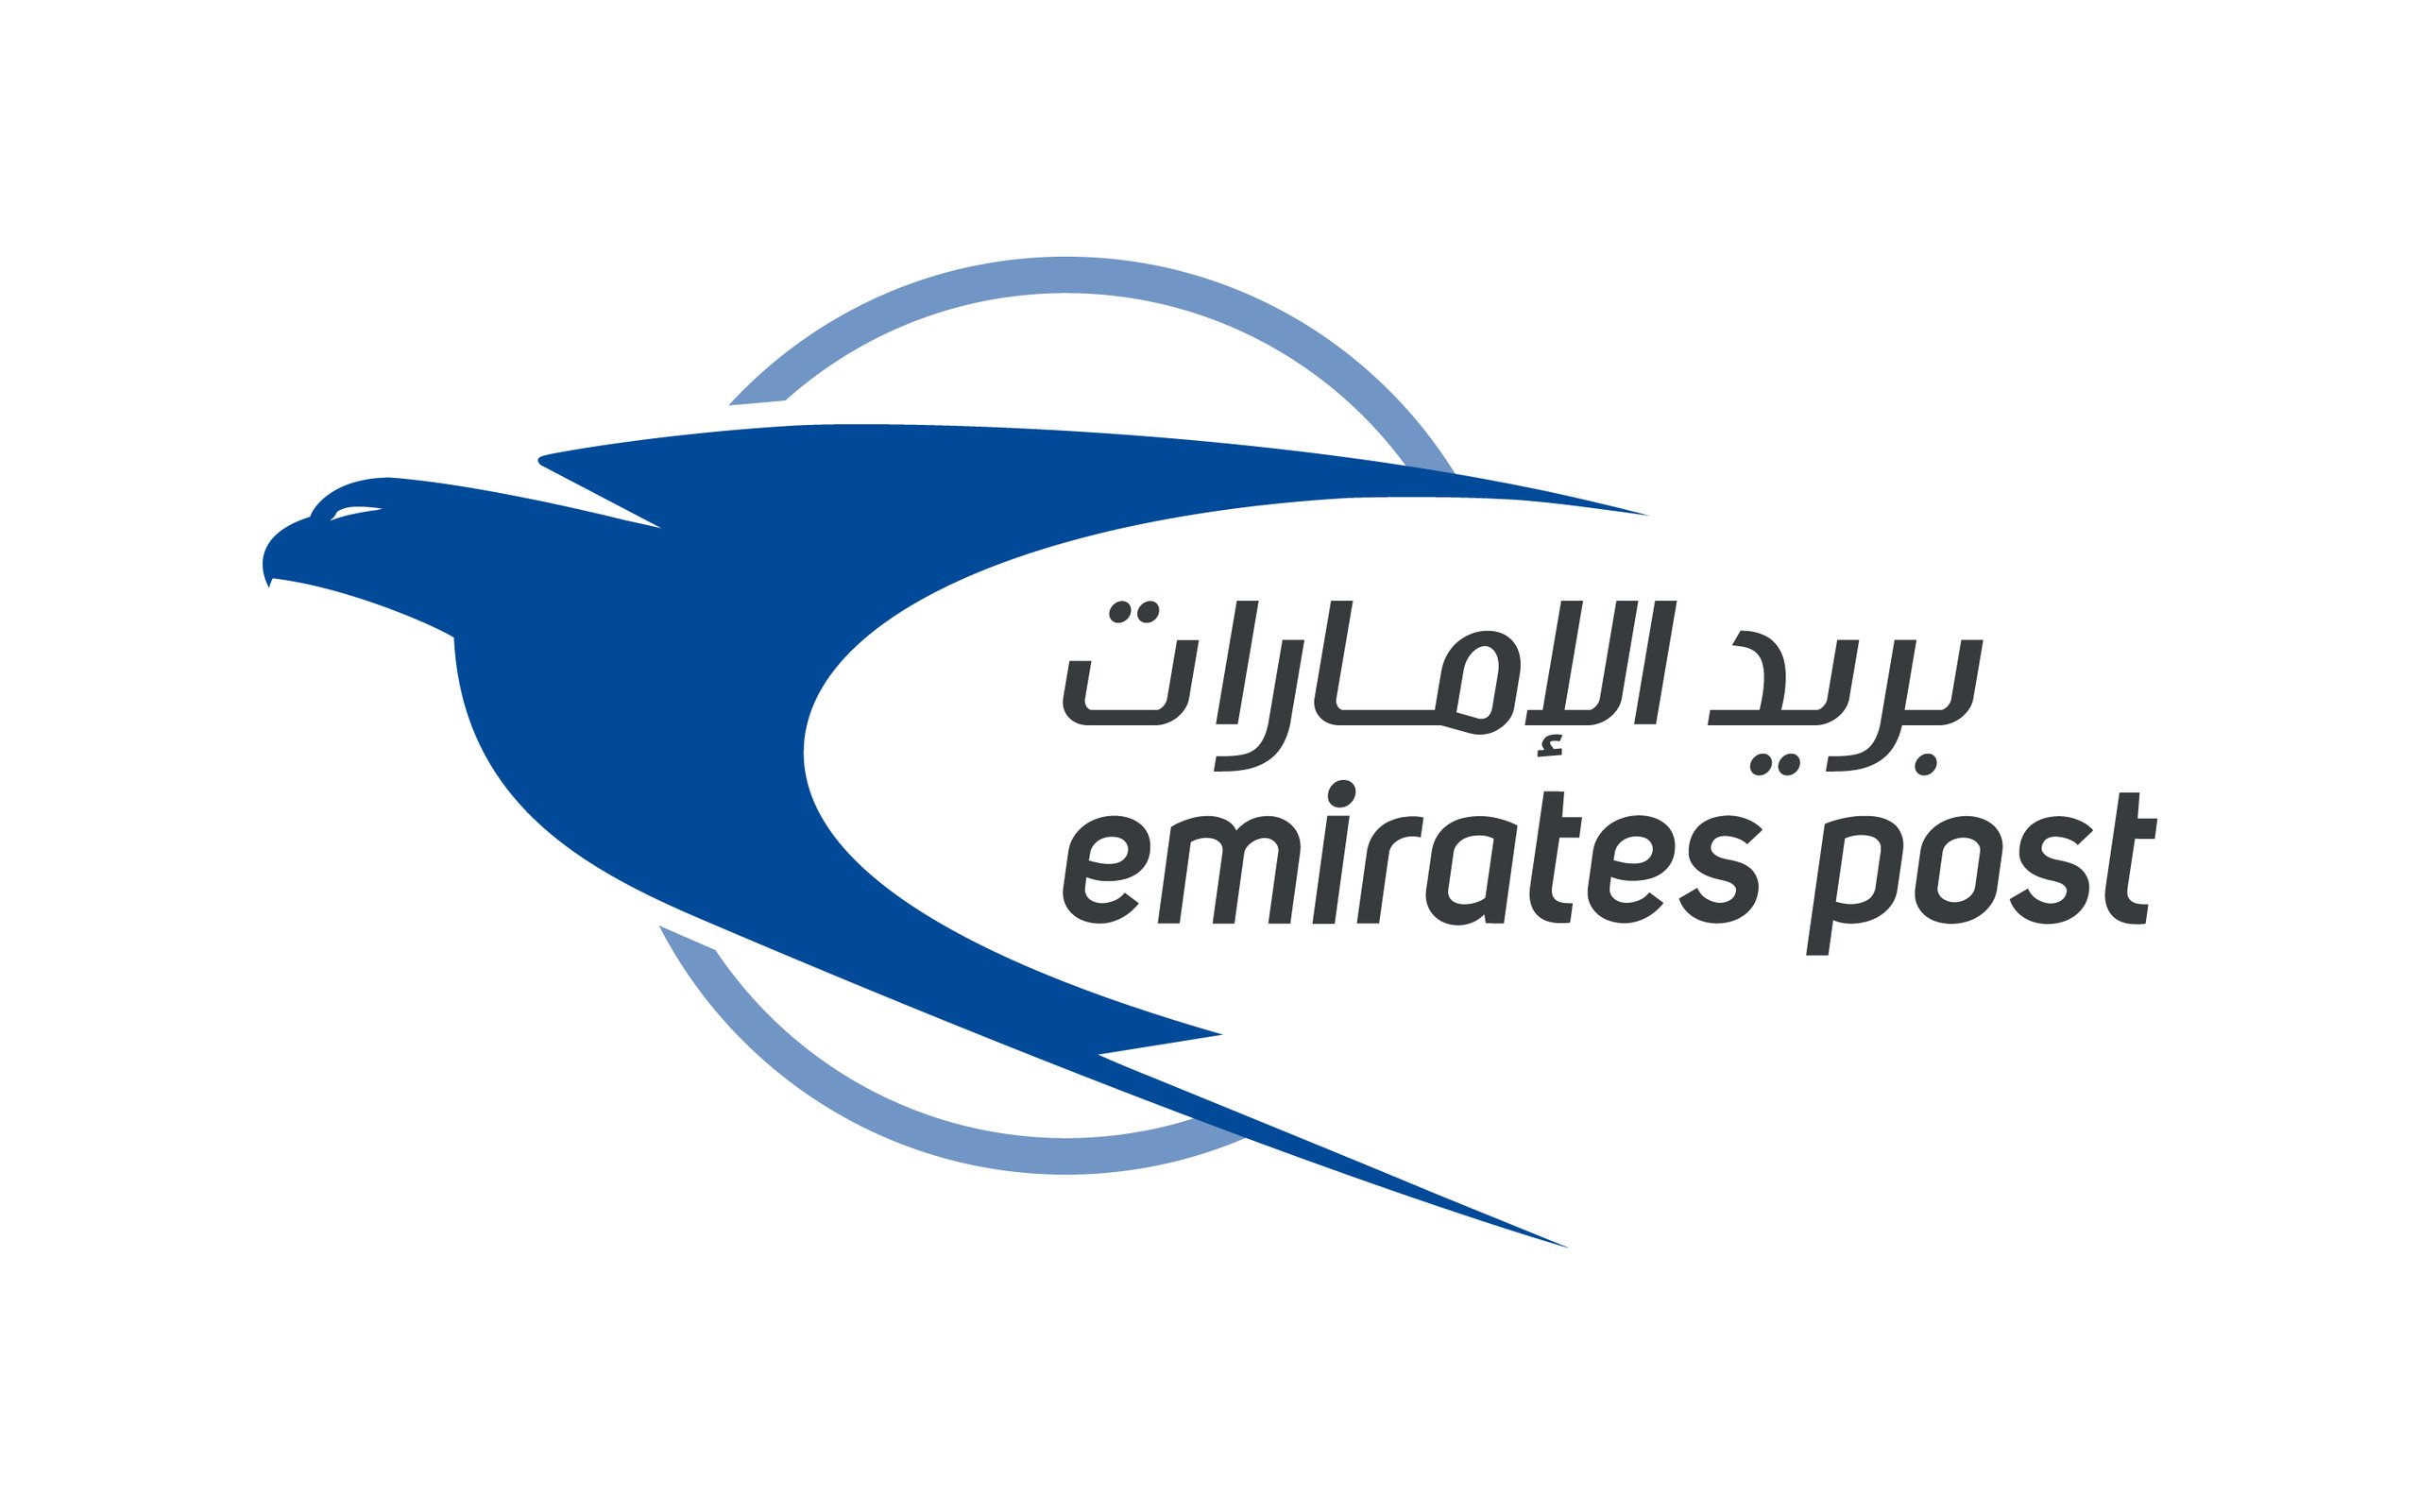 الإمارات الثانية عالميًا والأولى إقليميًا في خدمات البريد العاجل الدولي